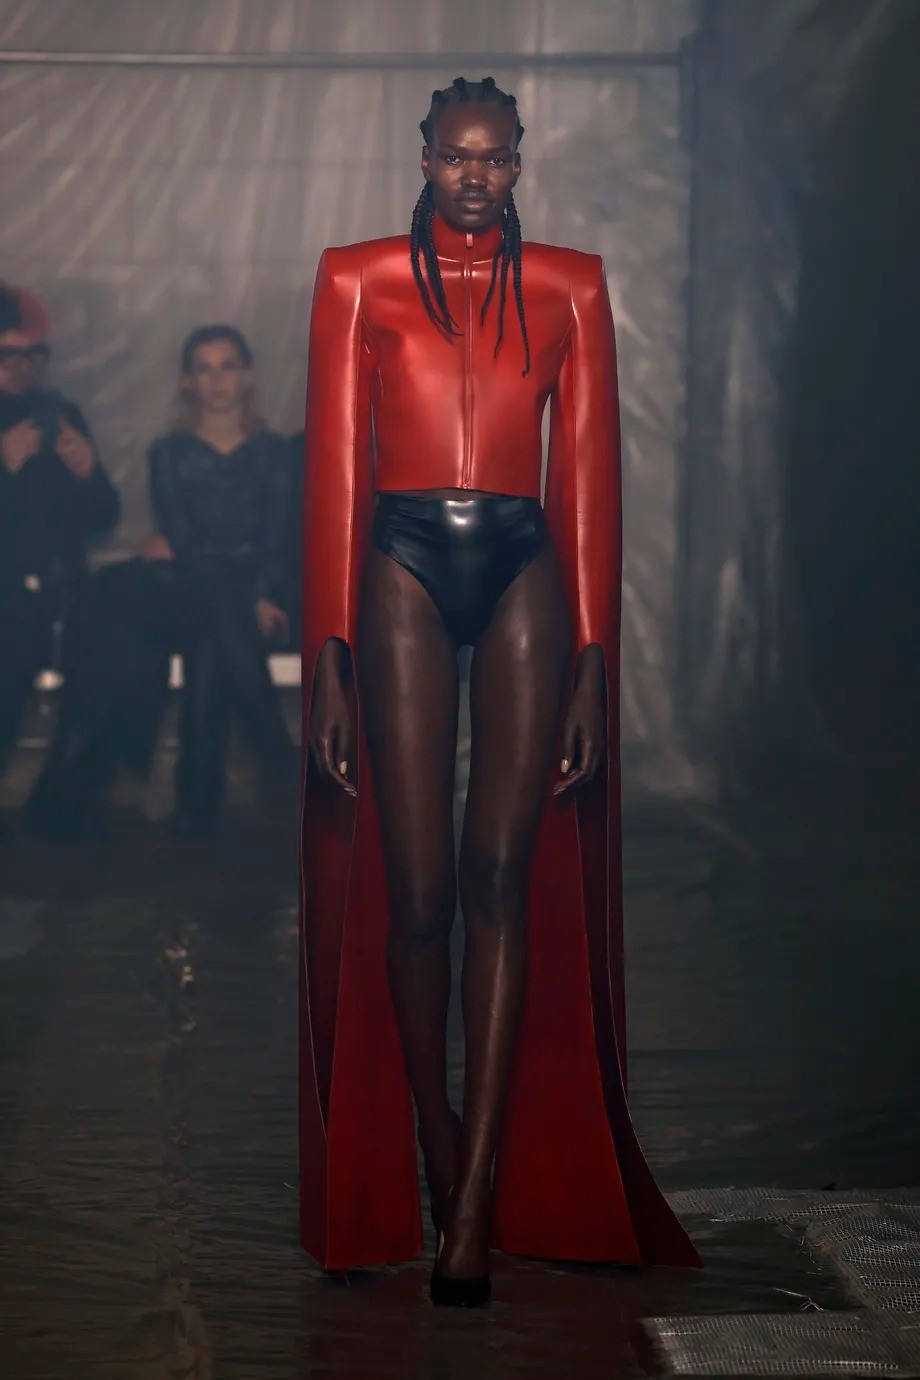 《暗黑破壞神4》主題服裝亮相米蘭時裝周 這服裝很地獄